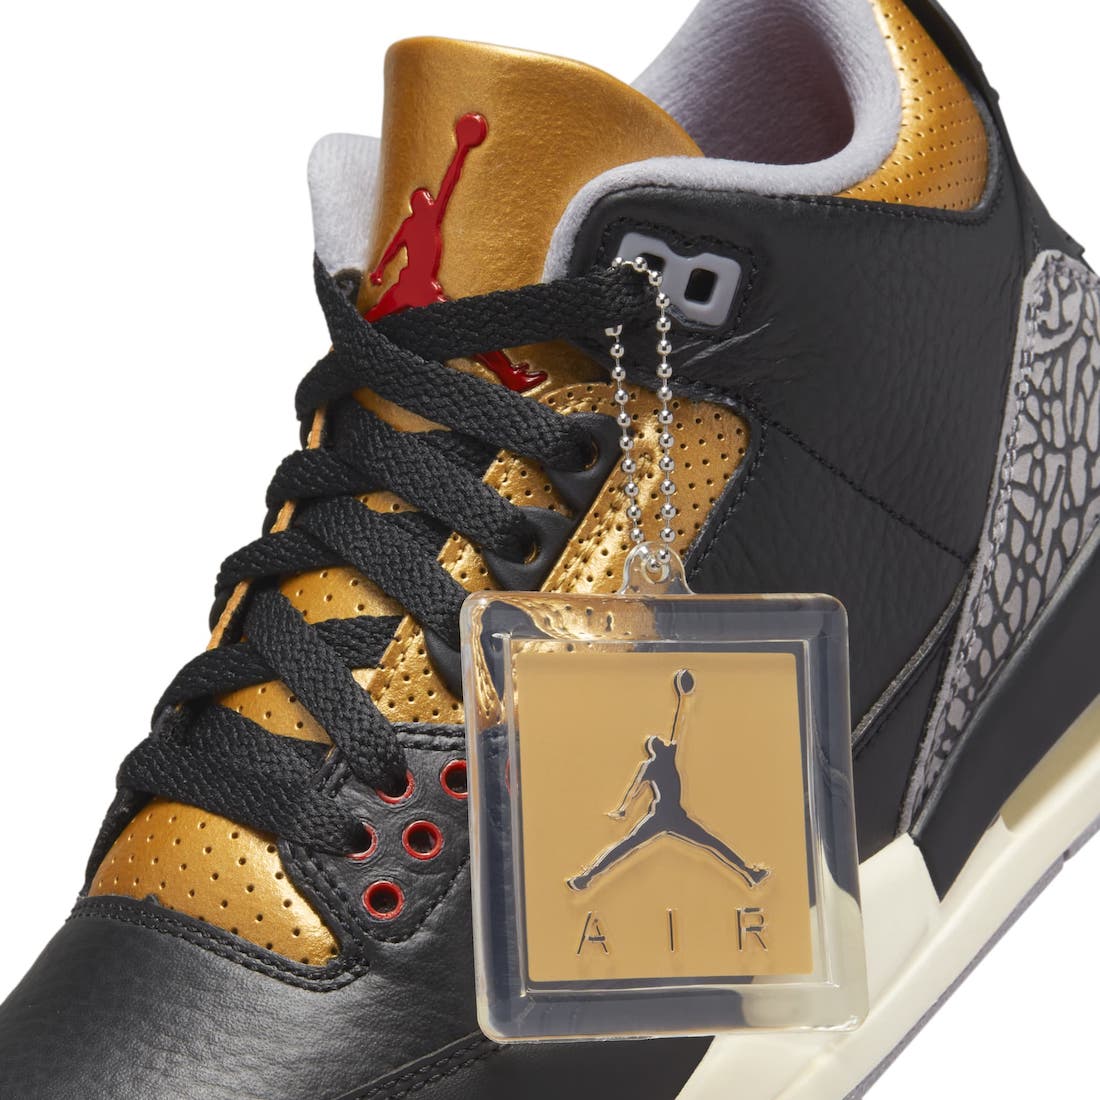 Air Jordan 3 Black Metallic Gold CK9246-067 Release Date